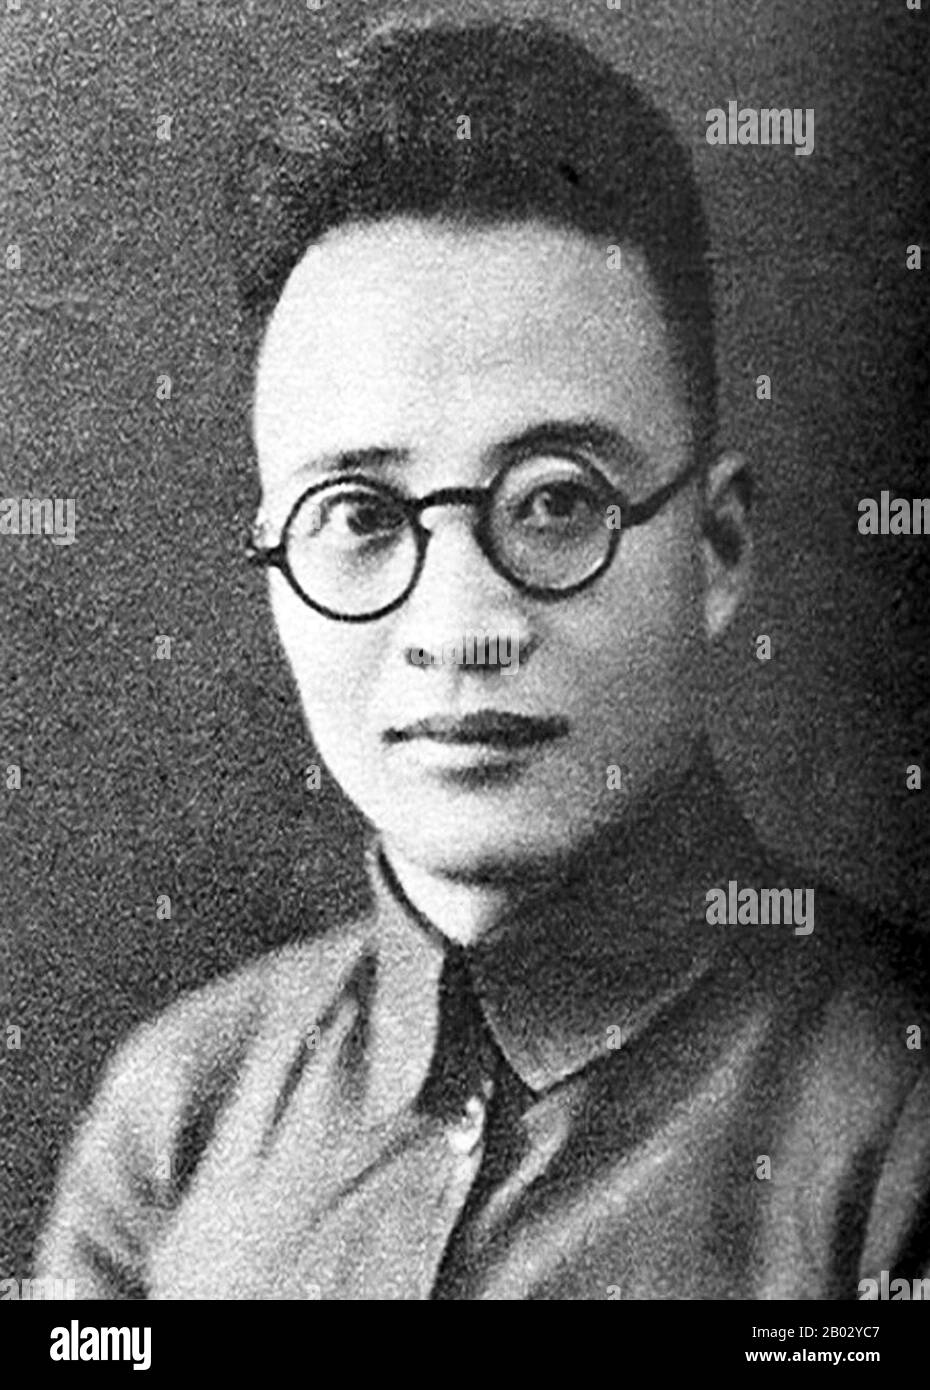 Qin Bangxian est né à Wuxi, Jiangsu, en 1907. Dans ses années précédentes, Qin a étudié à l'Ecole industrielle de Suzhou où il a joué un rôle actif dans des activités contre l'impérialisme et les seigneurs de guerre tyrannisant la Chine. En 1925 Qin est entré à l'Université de Shanghai, une université connue pour son impact sur les jeunes révolutionnaires de l'époque. Les idées du marxisme et du léninisme y ont été enseignées par les premiers dirigeants du parti communiste chinois. Après la fin de la seconde Guerre mondiale en 1945, Mao Zedong a été invité par Chiang Kaishek à Chongqing pour la négociation de la paix afin d'éviter la guerre civile entre CPC et K. Banque D'Images